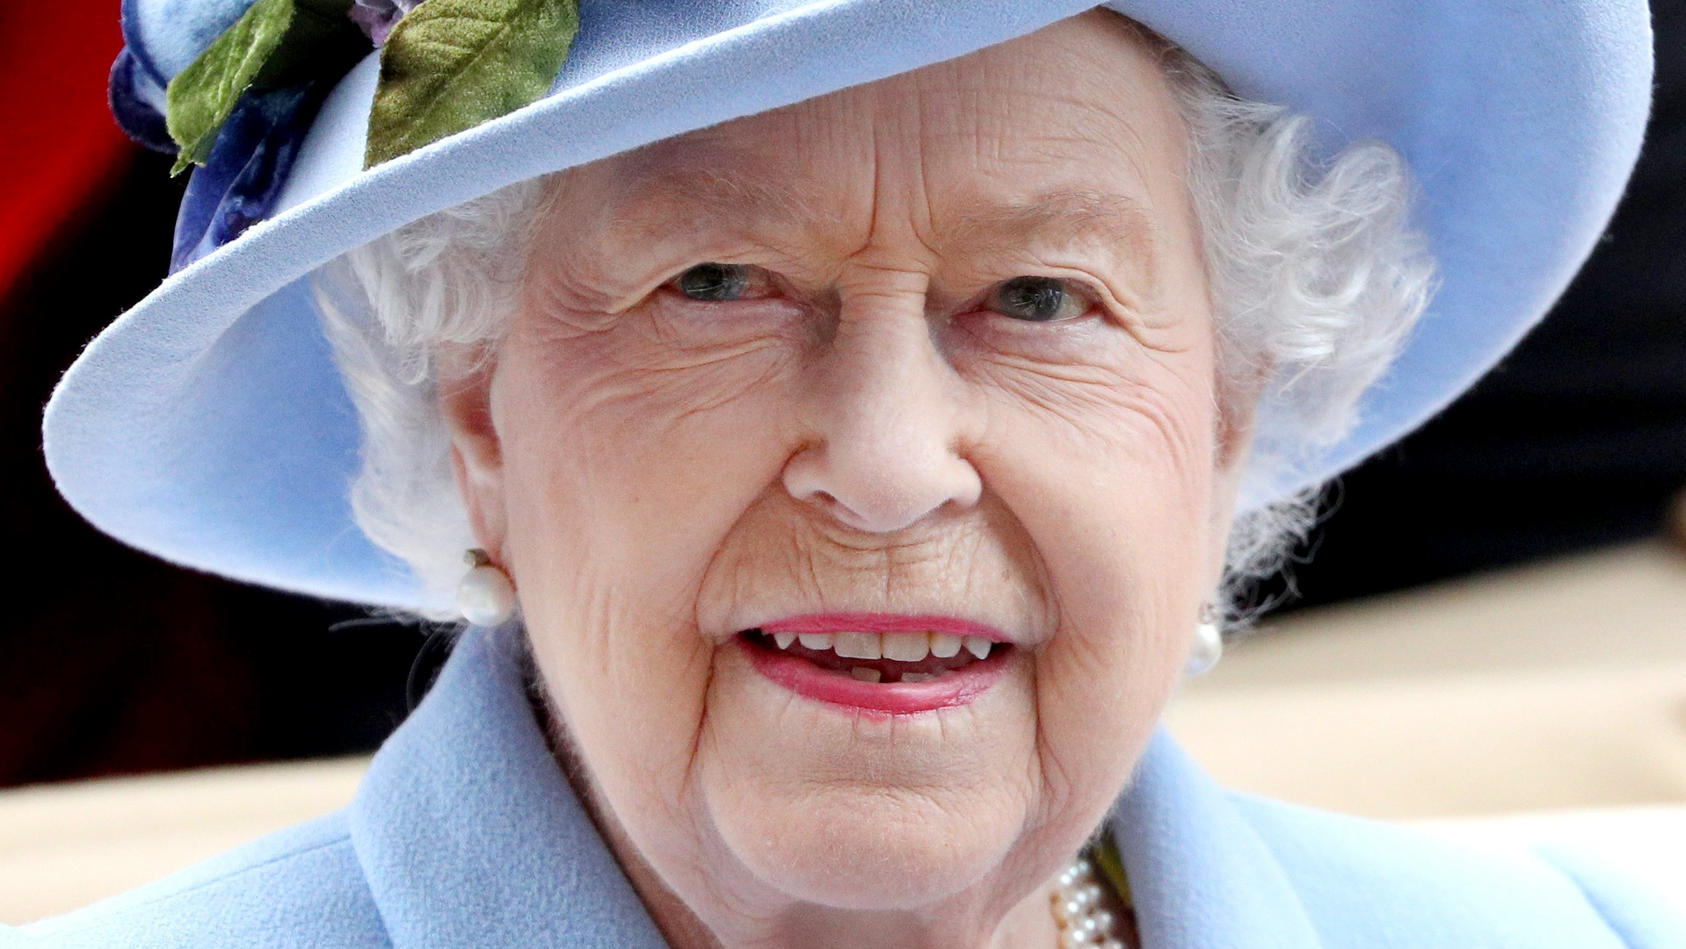 Schokoholiker Queen Elizabeth II. : So sieht ihr royaler Speiseplan aus